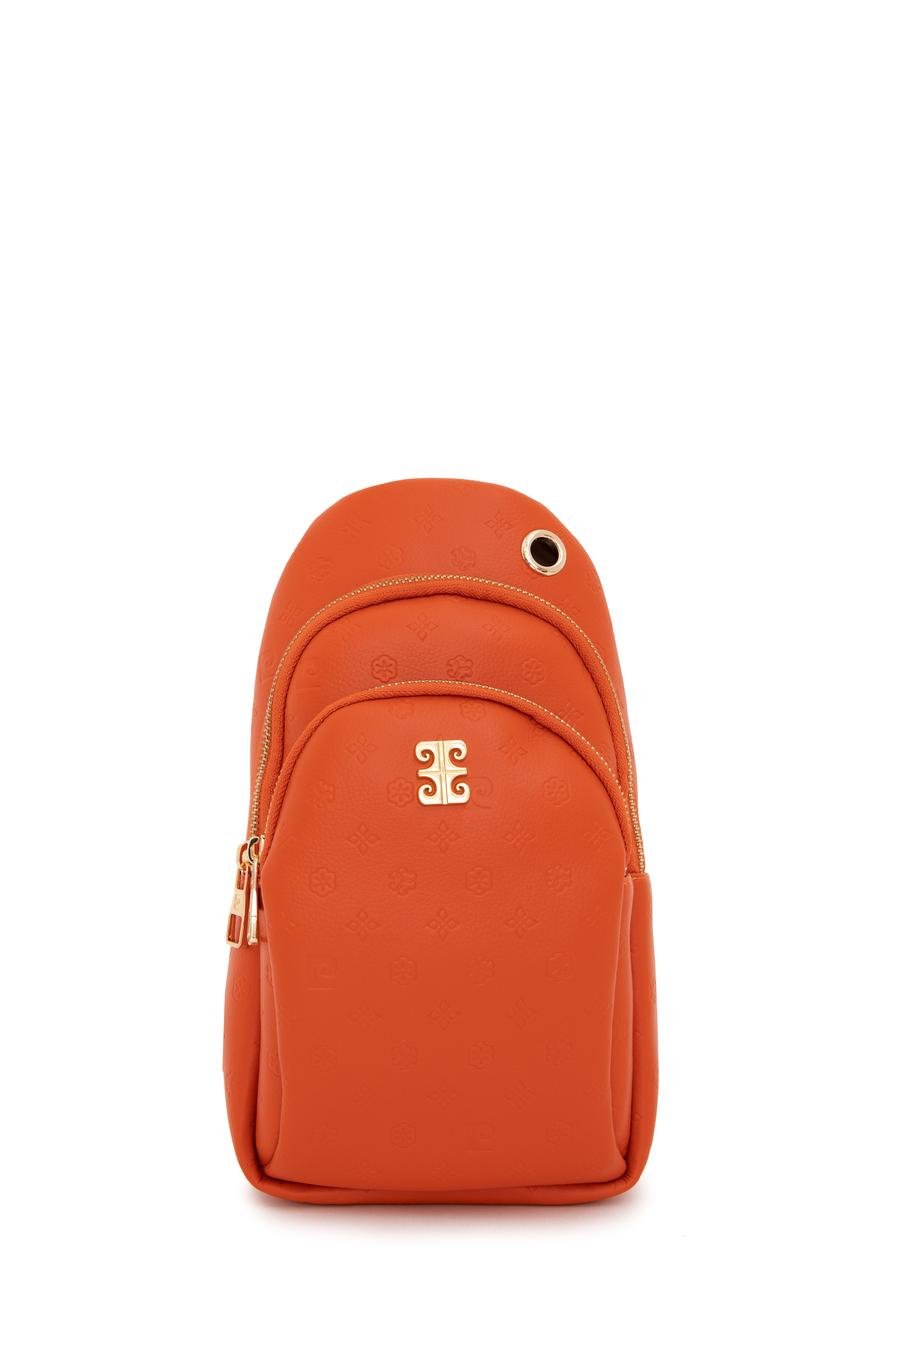 کیف  نارنجی  استاندارد  زنانه  پیرکاردین